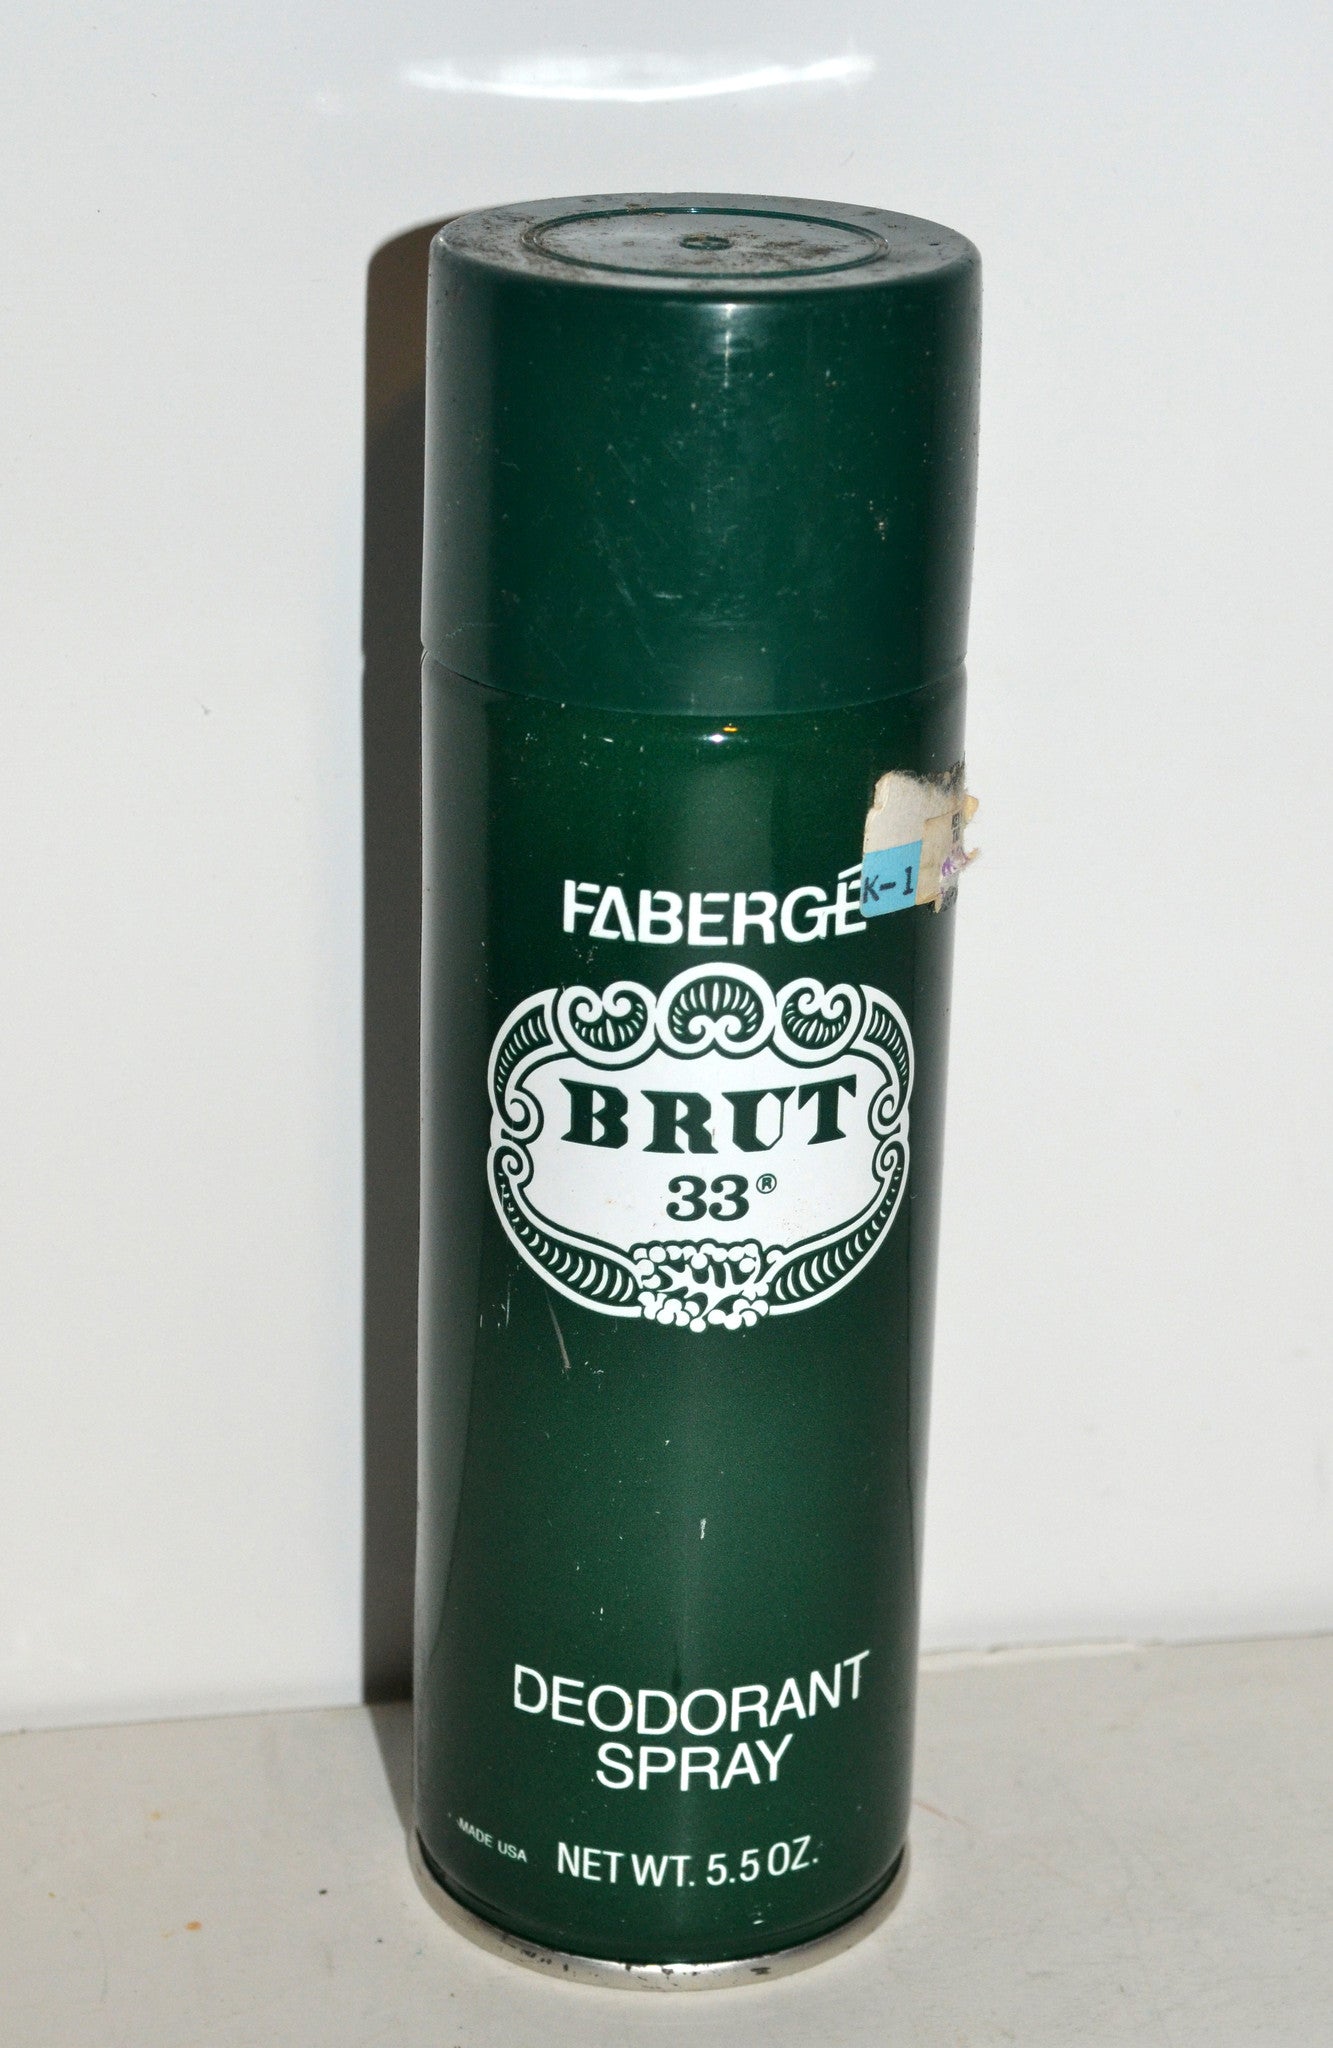 Faberge Brut 33 Deodorant